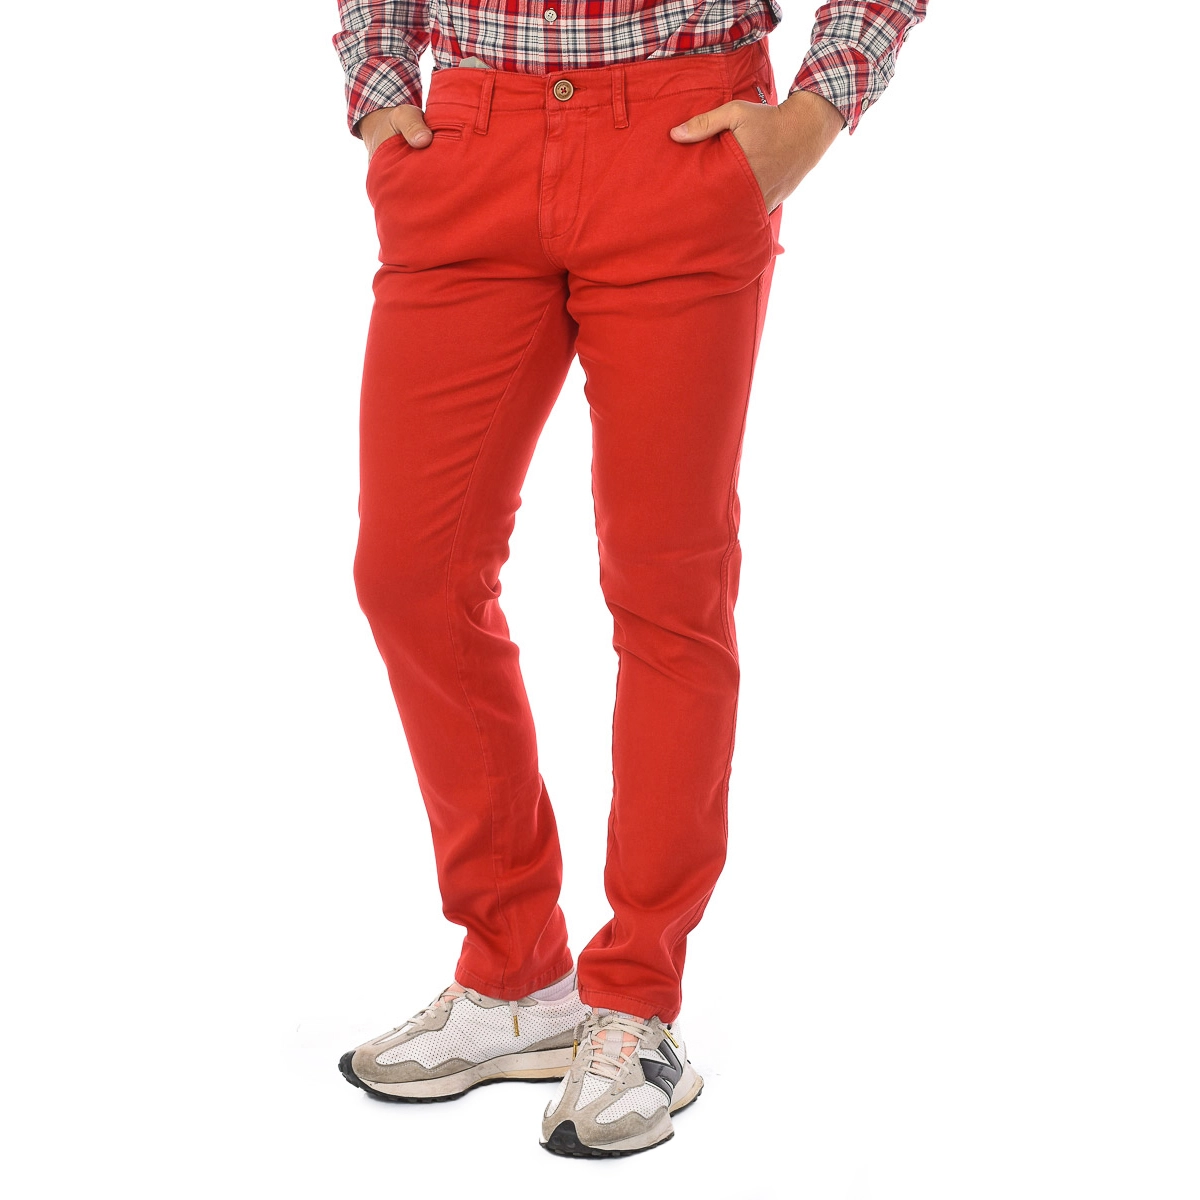 Pantalón largo MANA JOG TRUE Napapijri N0YHTL hombre Talla: 35 Color: Rojo N0YHTL-R70.35